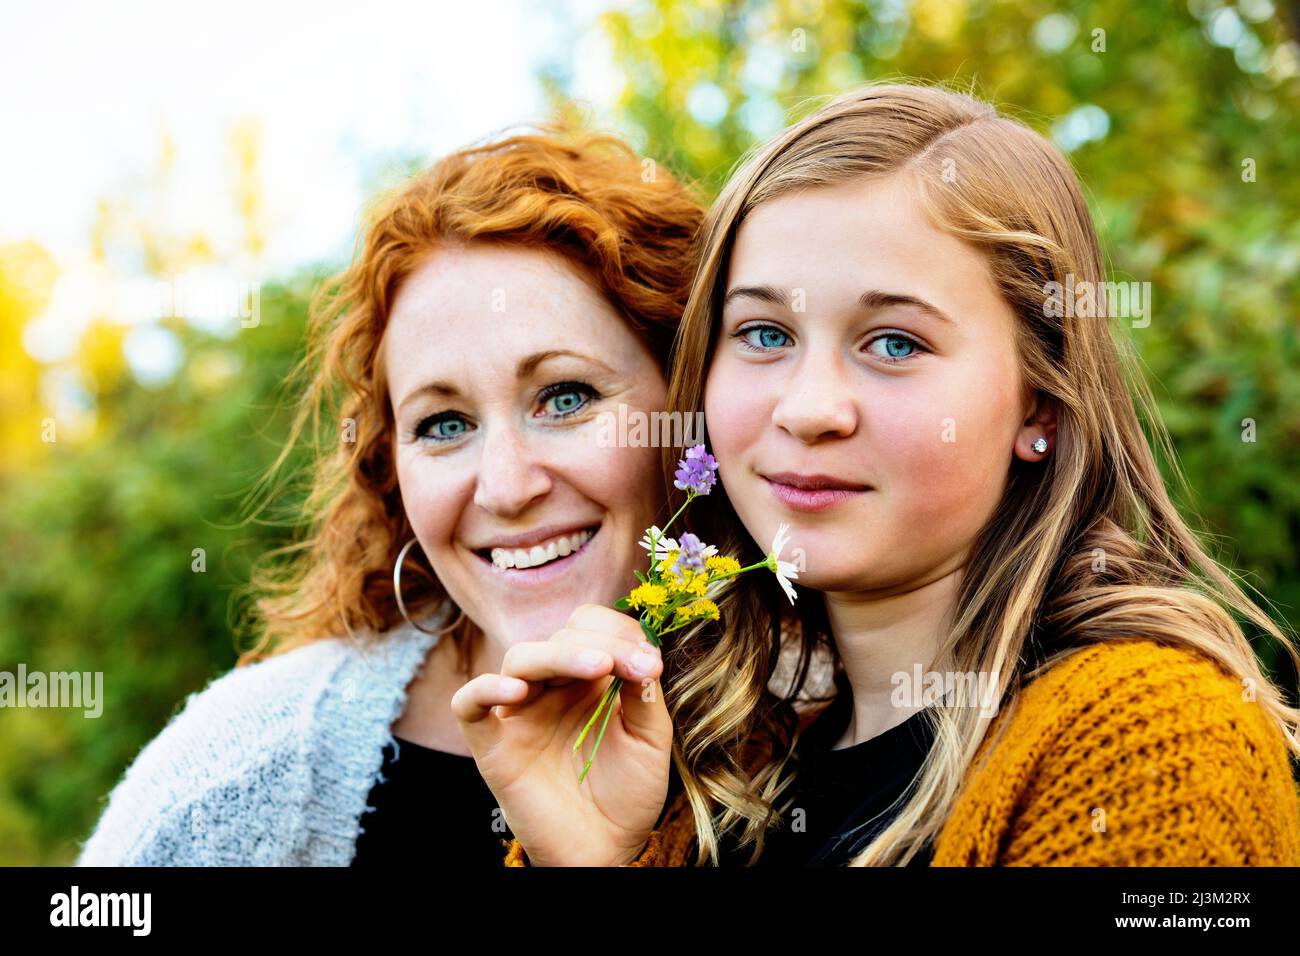 Außenportrait einer Mutter mit ihrem Teenager-Mädchen, das eine kleine Gruppe von bunten Wildblumen in der Hand hält und die Kamera anschaut Stockfoto